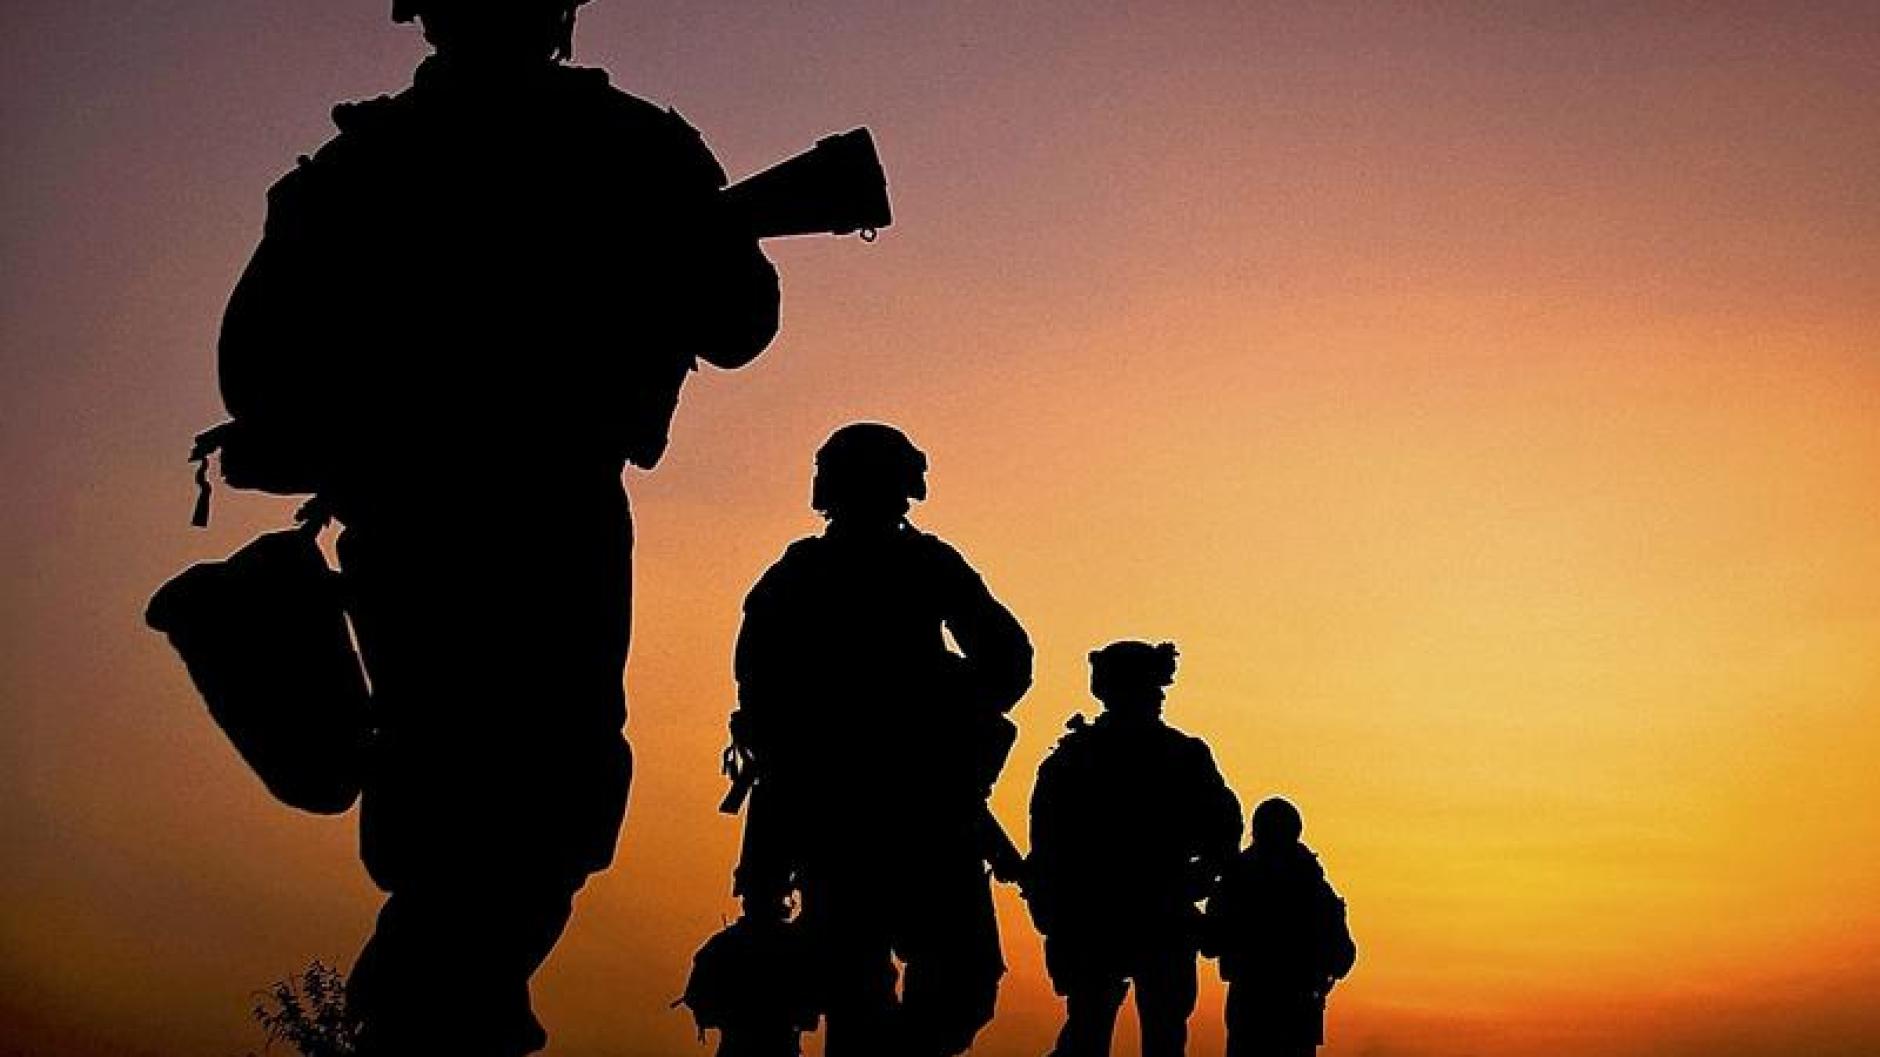 Militär: Australien rekrutiert neue Soldaten im Ausland | Augsburger